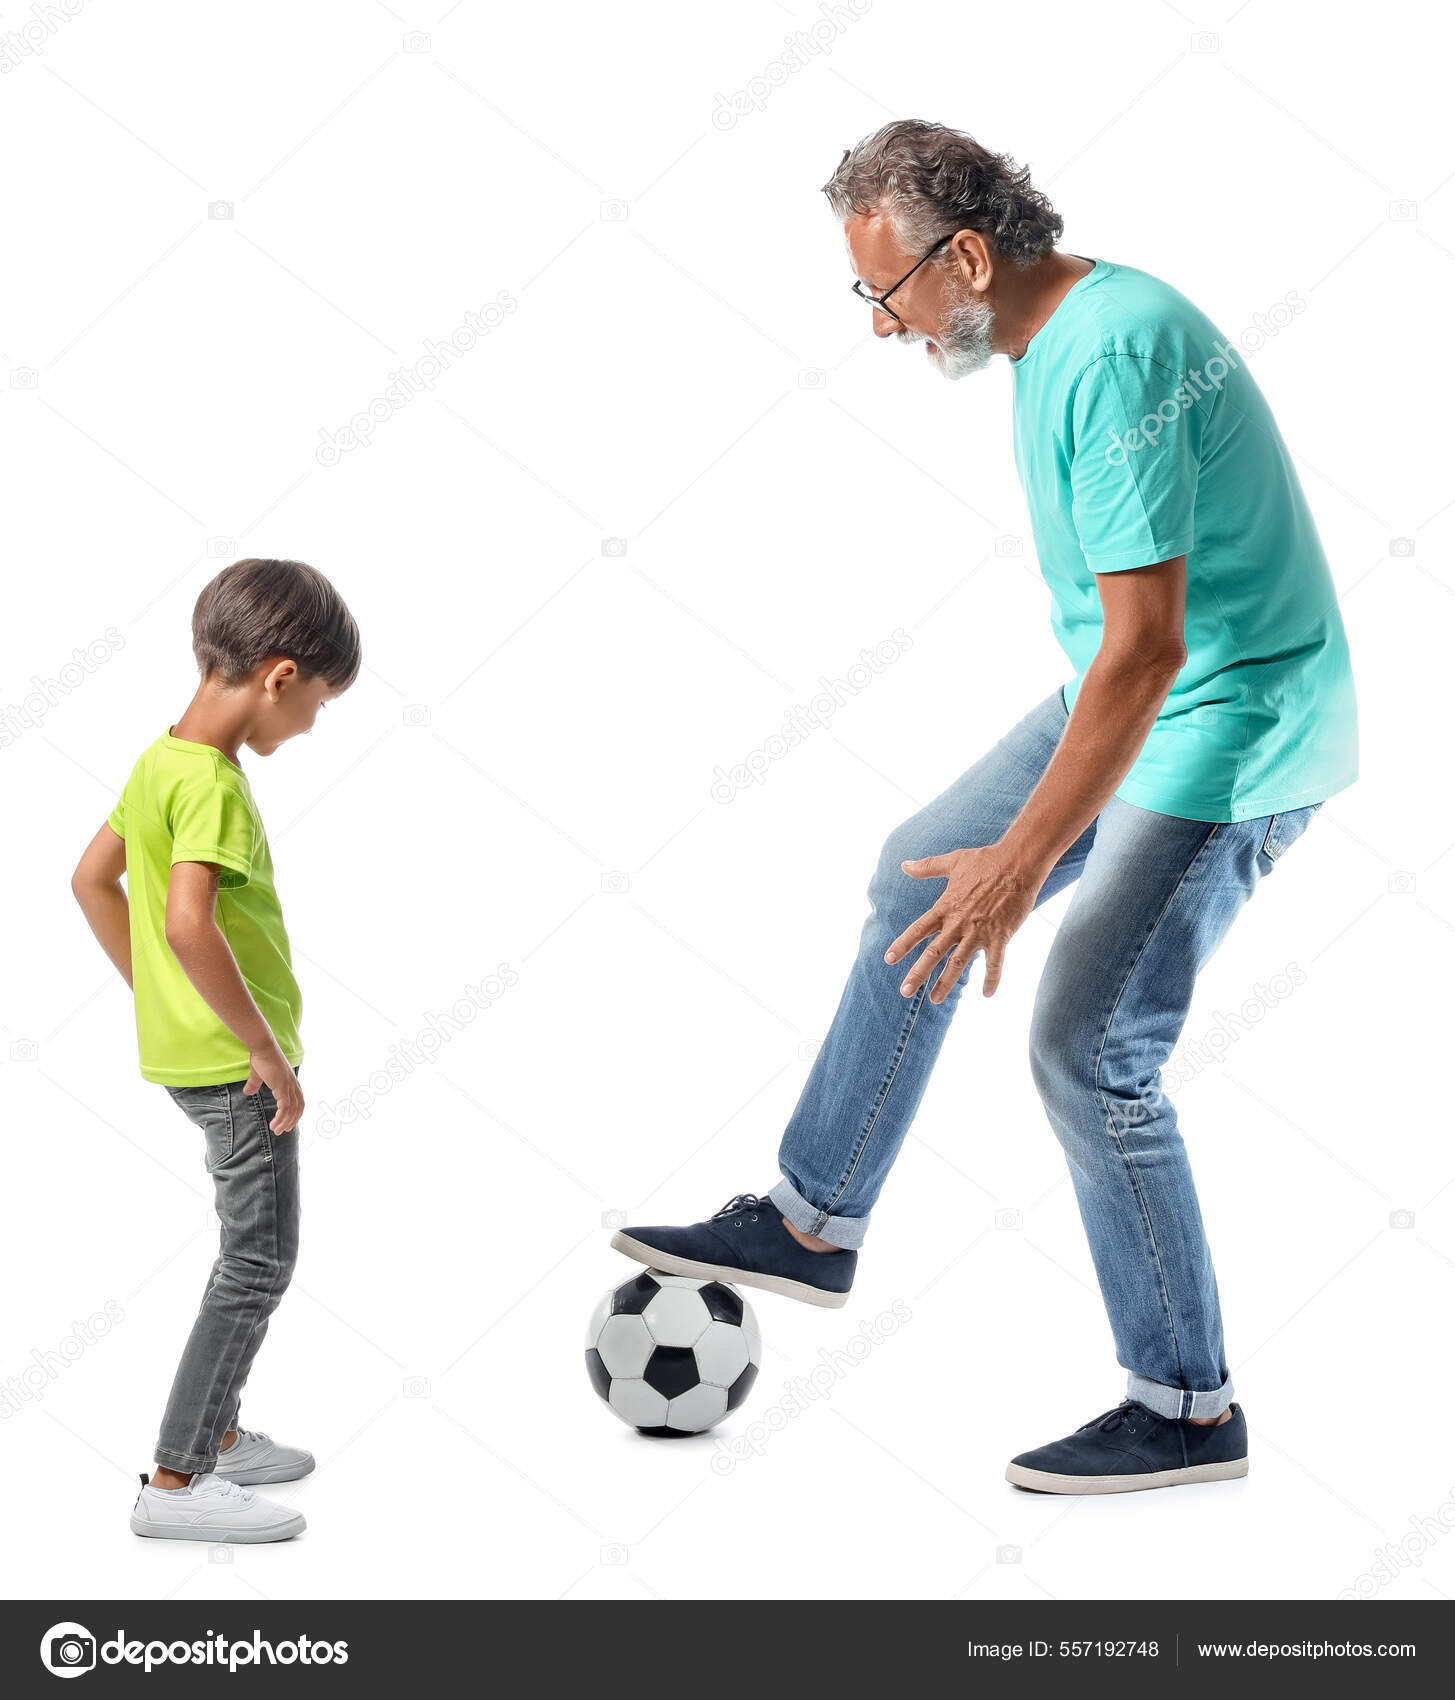 Poco Muchacho Del Fútbol De Juego. Un Niño Feliz Juega Al Fútbol